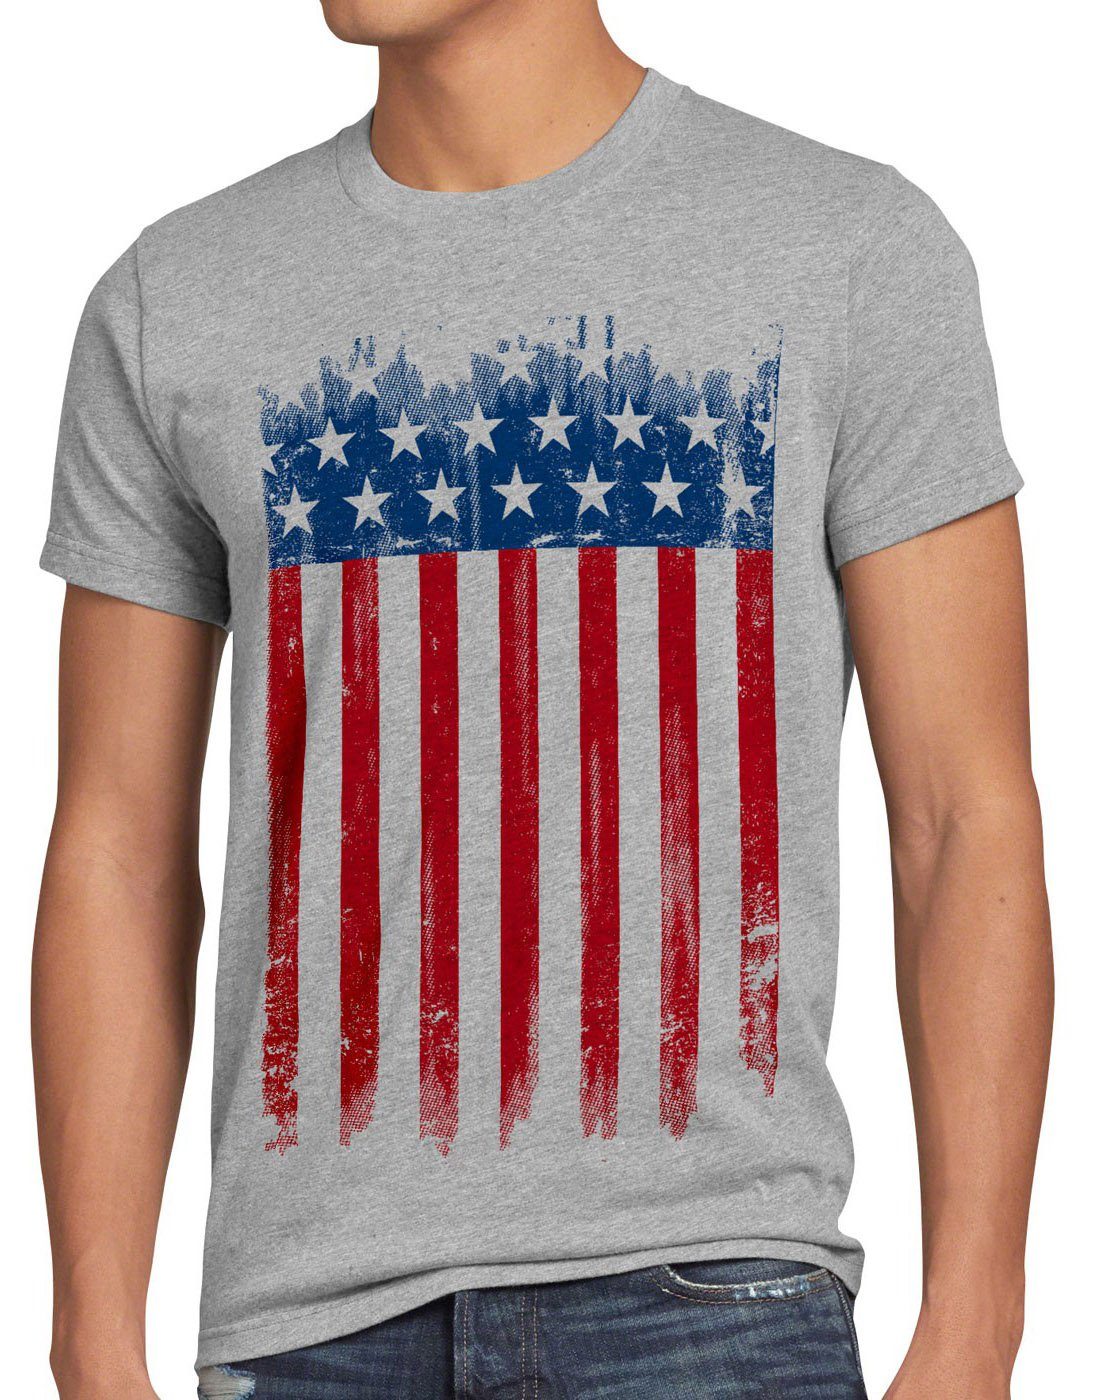 style3 Print-Shirt Herren T-Shirt US Flagge vereinigte staaten united states amerika america von grau meliert